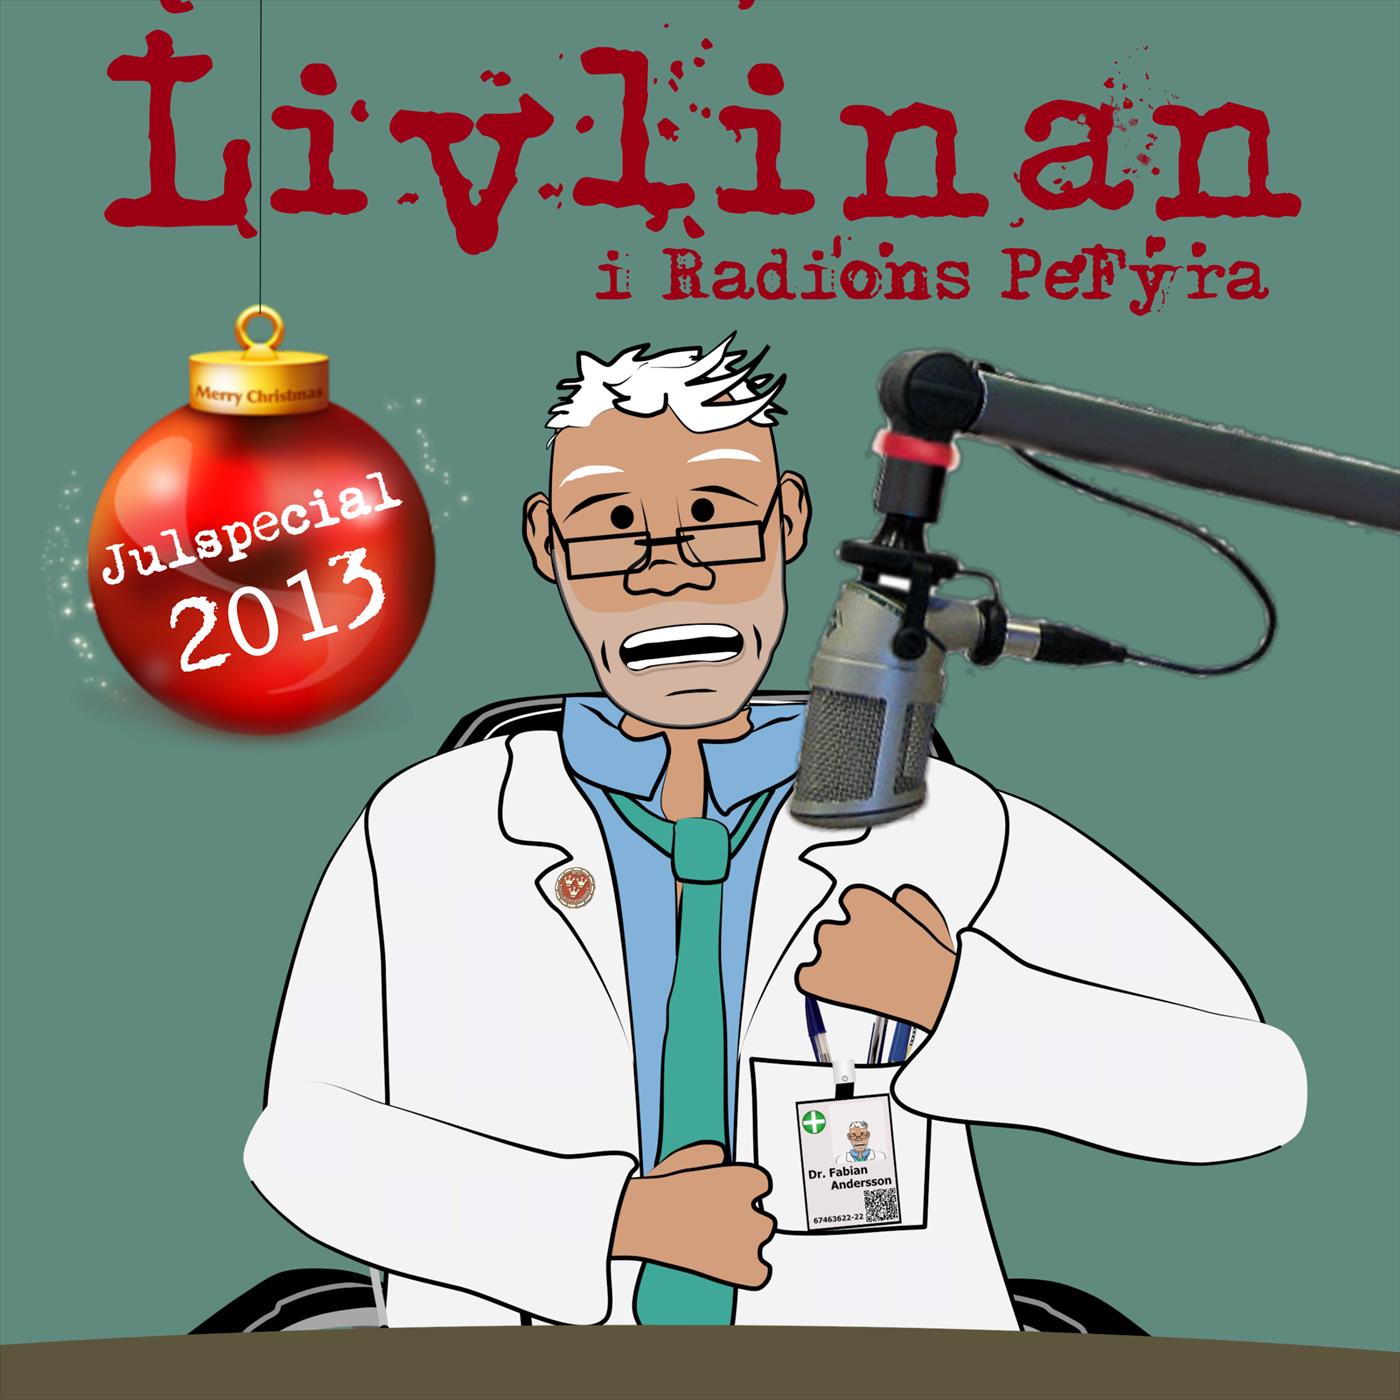 Livlinans Julspecial 2013